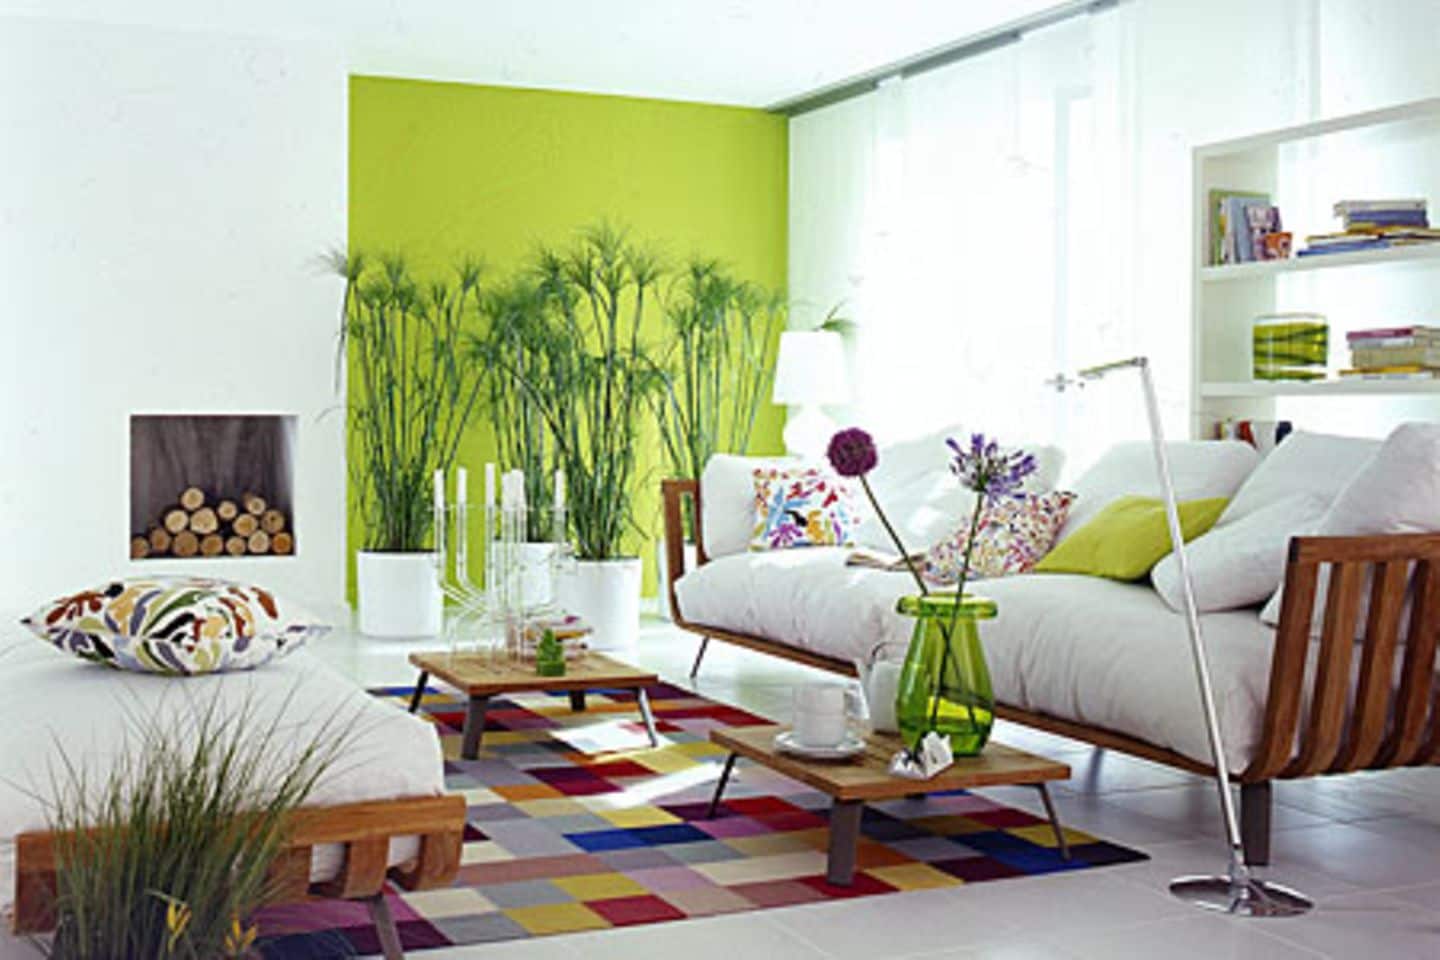 Farbige Wand in leuchtendem Grün - Bild 5